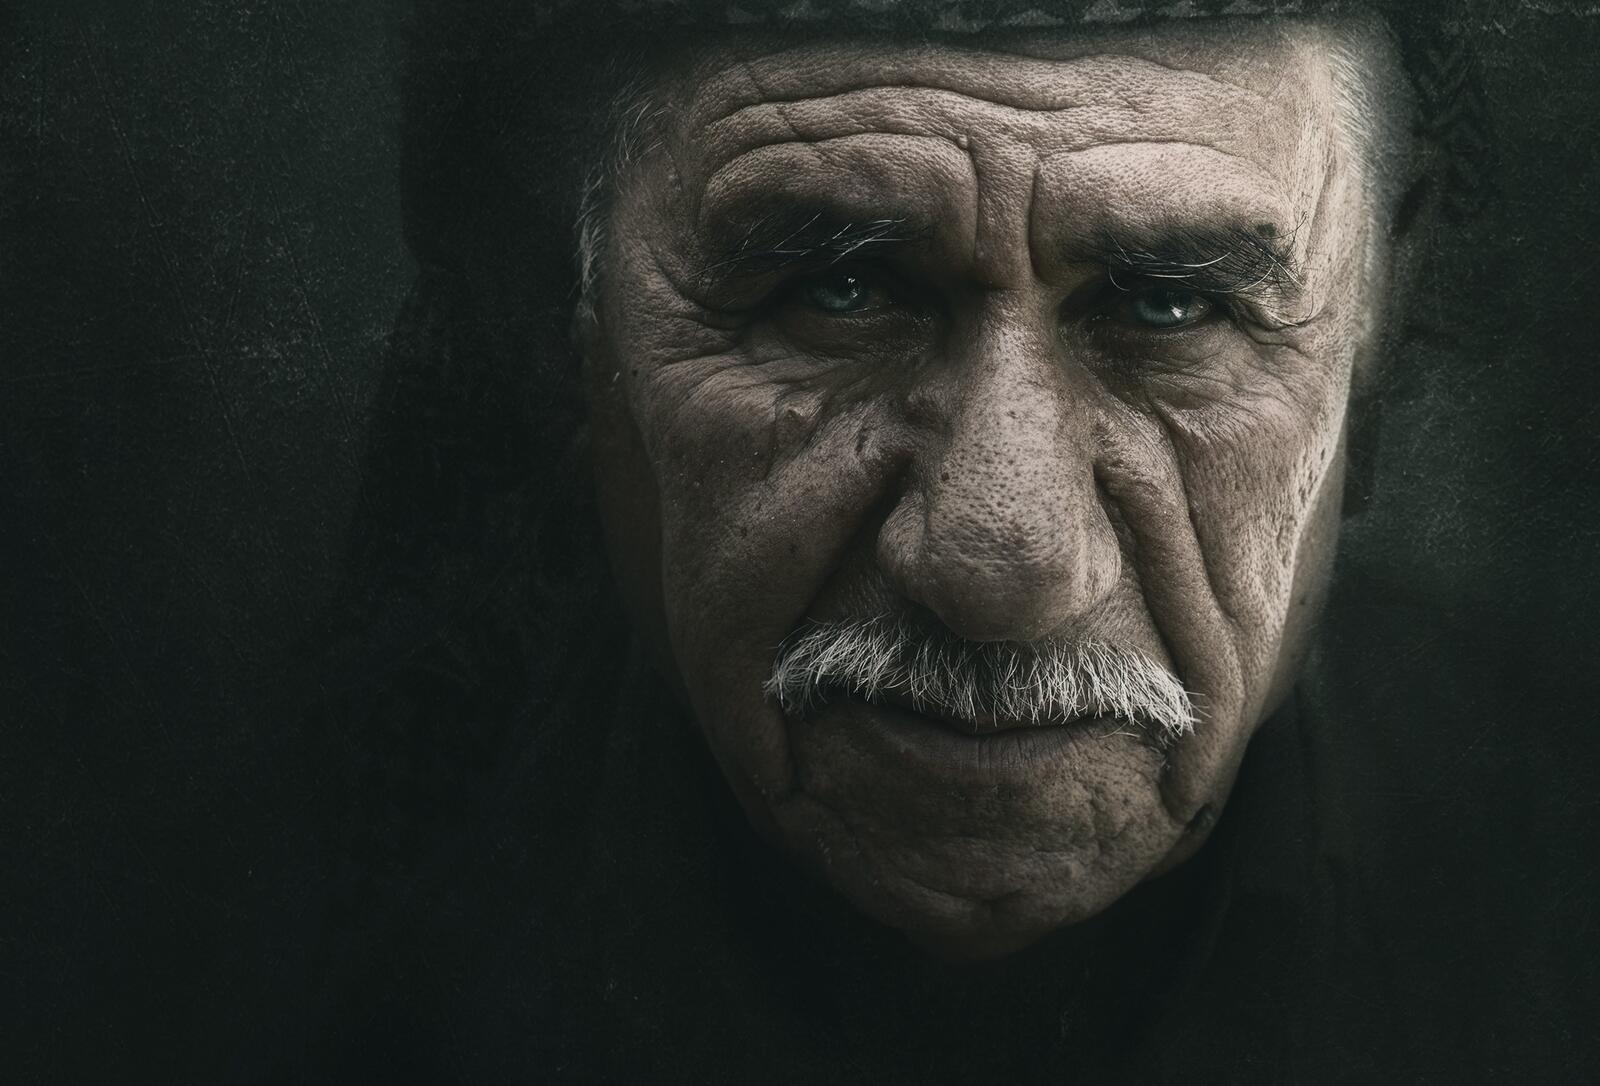 Бесплатное фото Портрет старика с усами